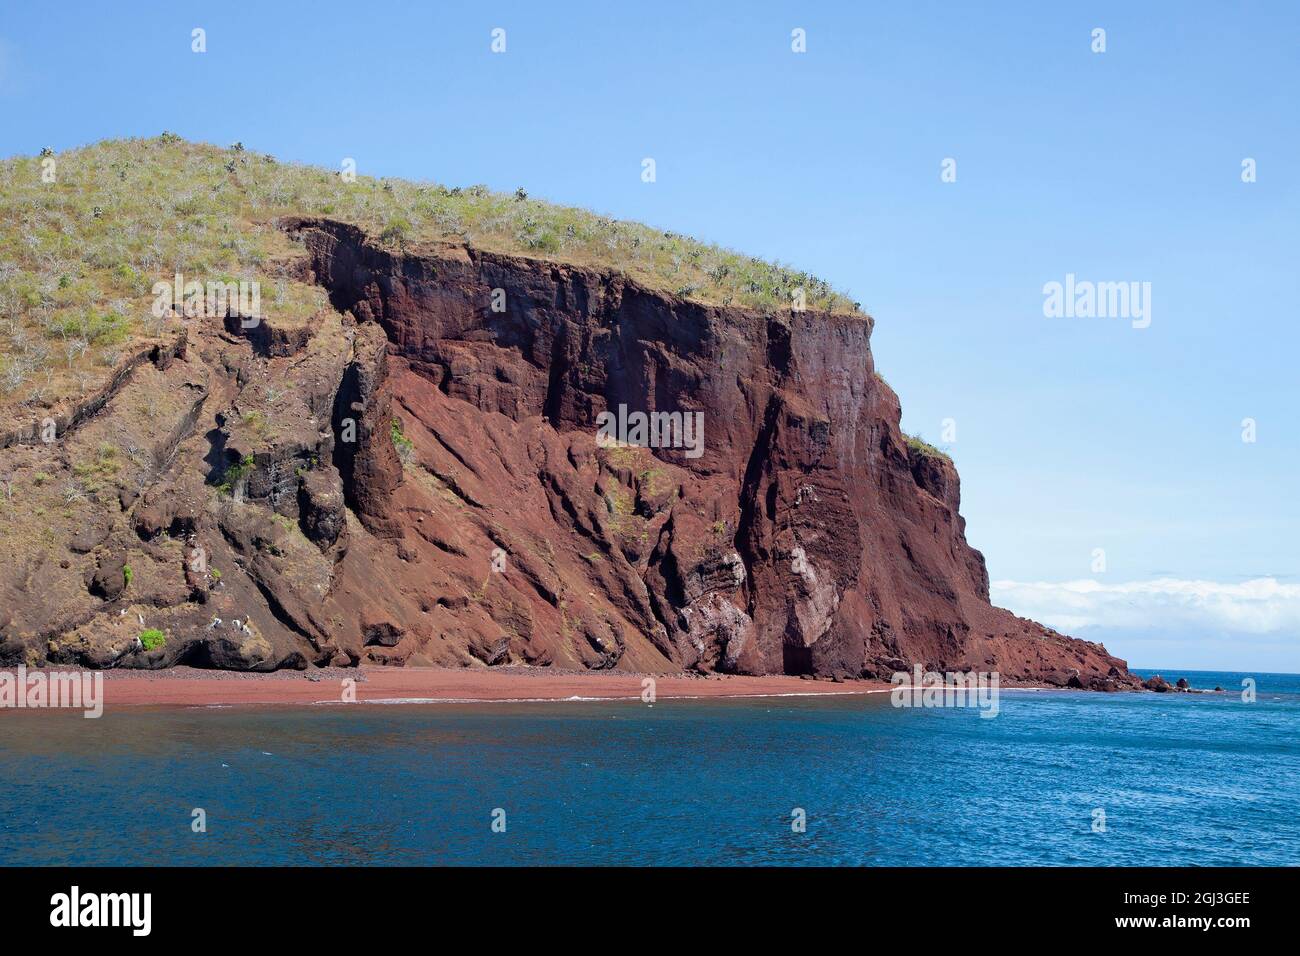 La falaise rouge de l'île de Rabida et la plage se forment à partir de la roche volcanique de lave de scoria dans les Galapagos. Les arbres en haut de la colline sont Palo Santo (Bursera graveolens) Banque D'Images